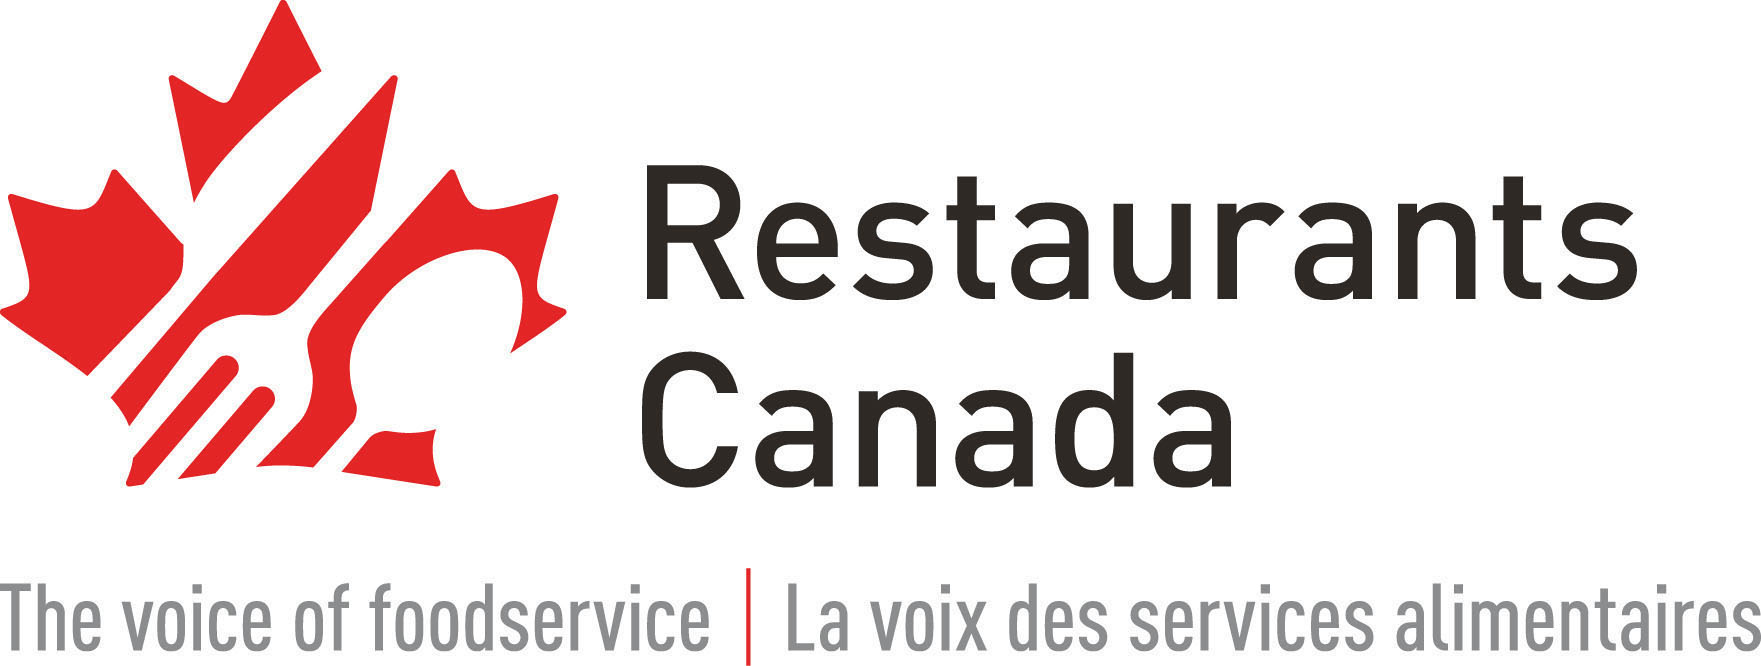 Manitoba’s restauran